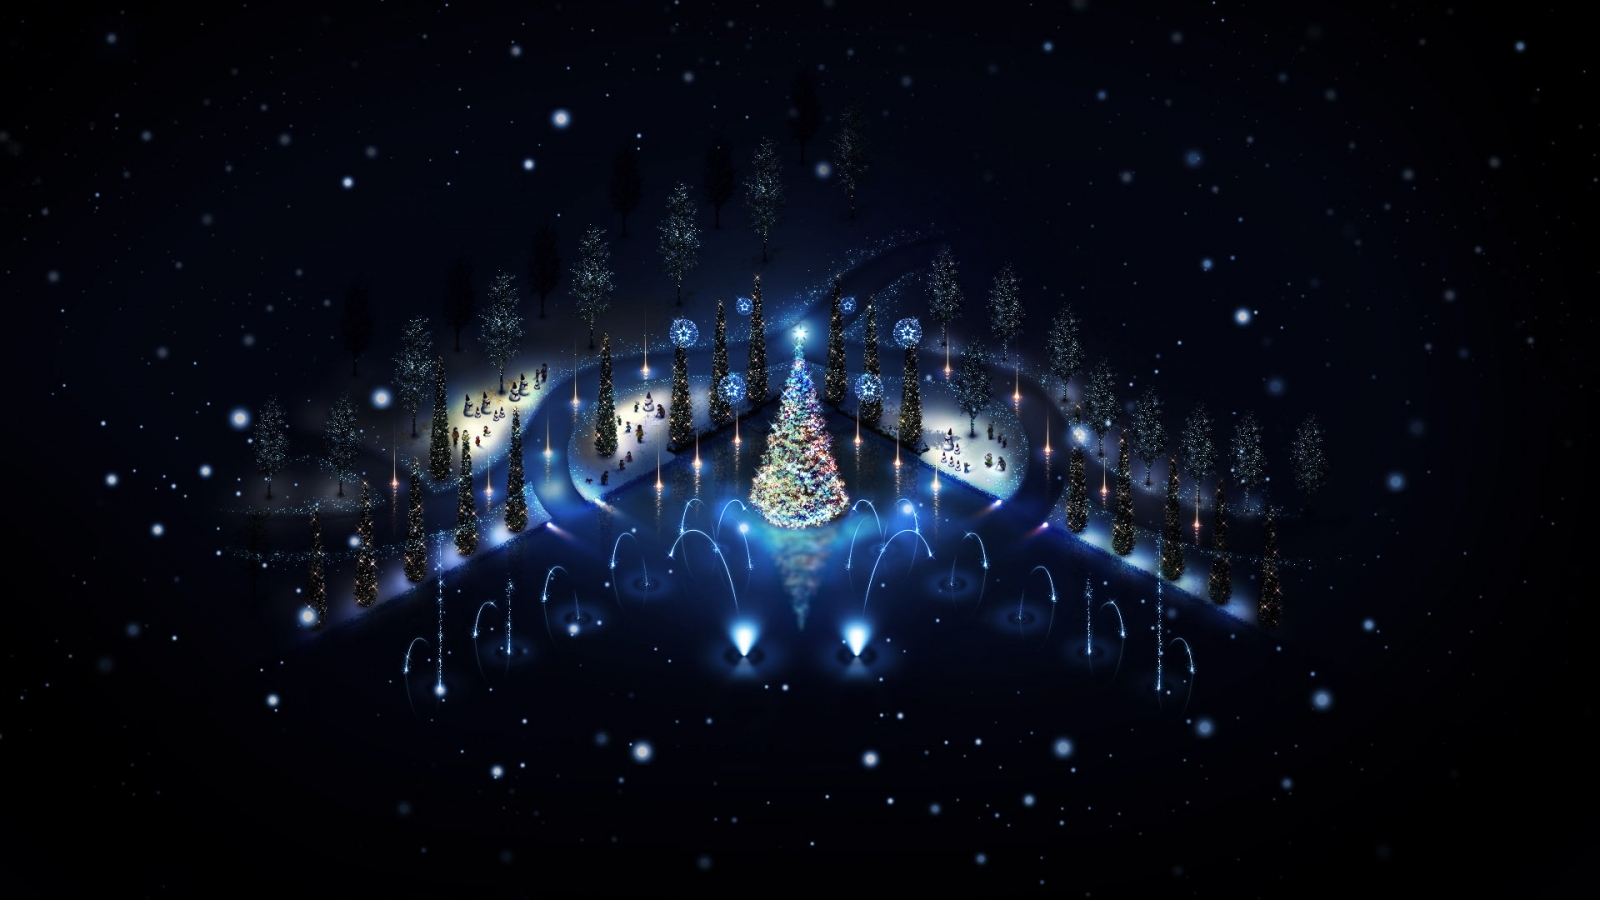 Lovely Christmas Trees Lighting for 1600 x 900 HDTV resolution